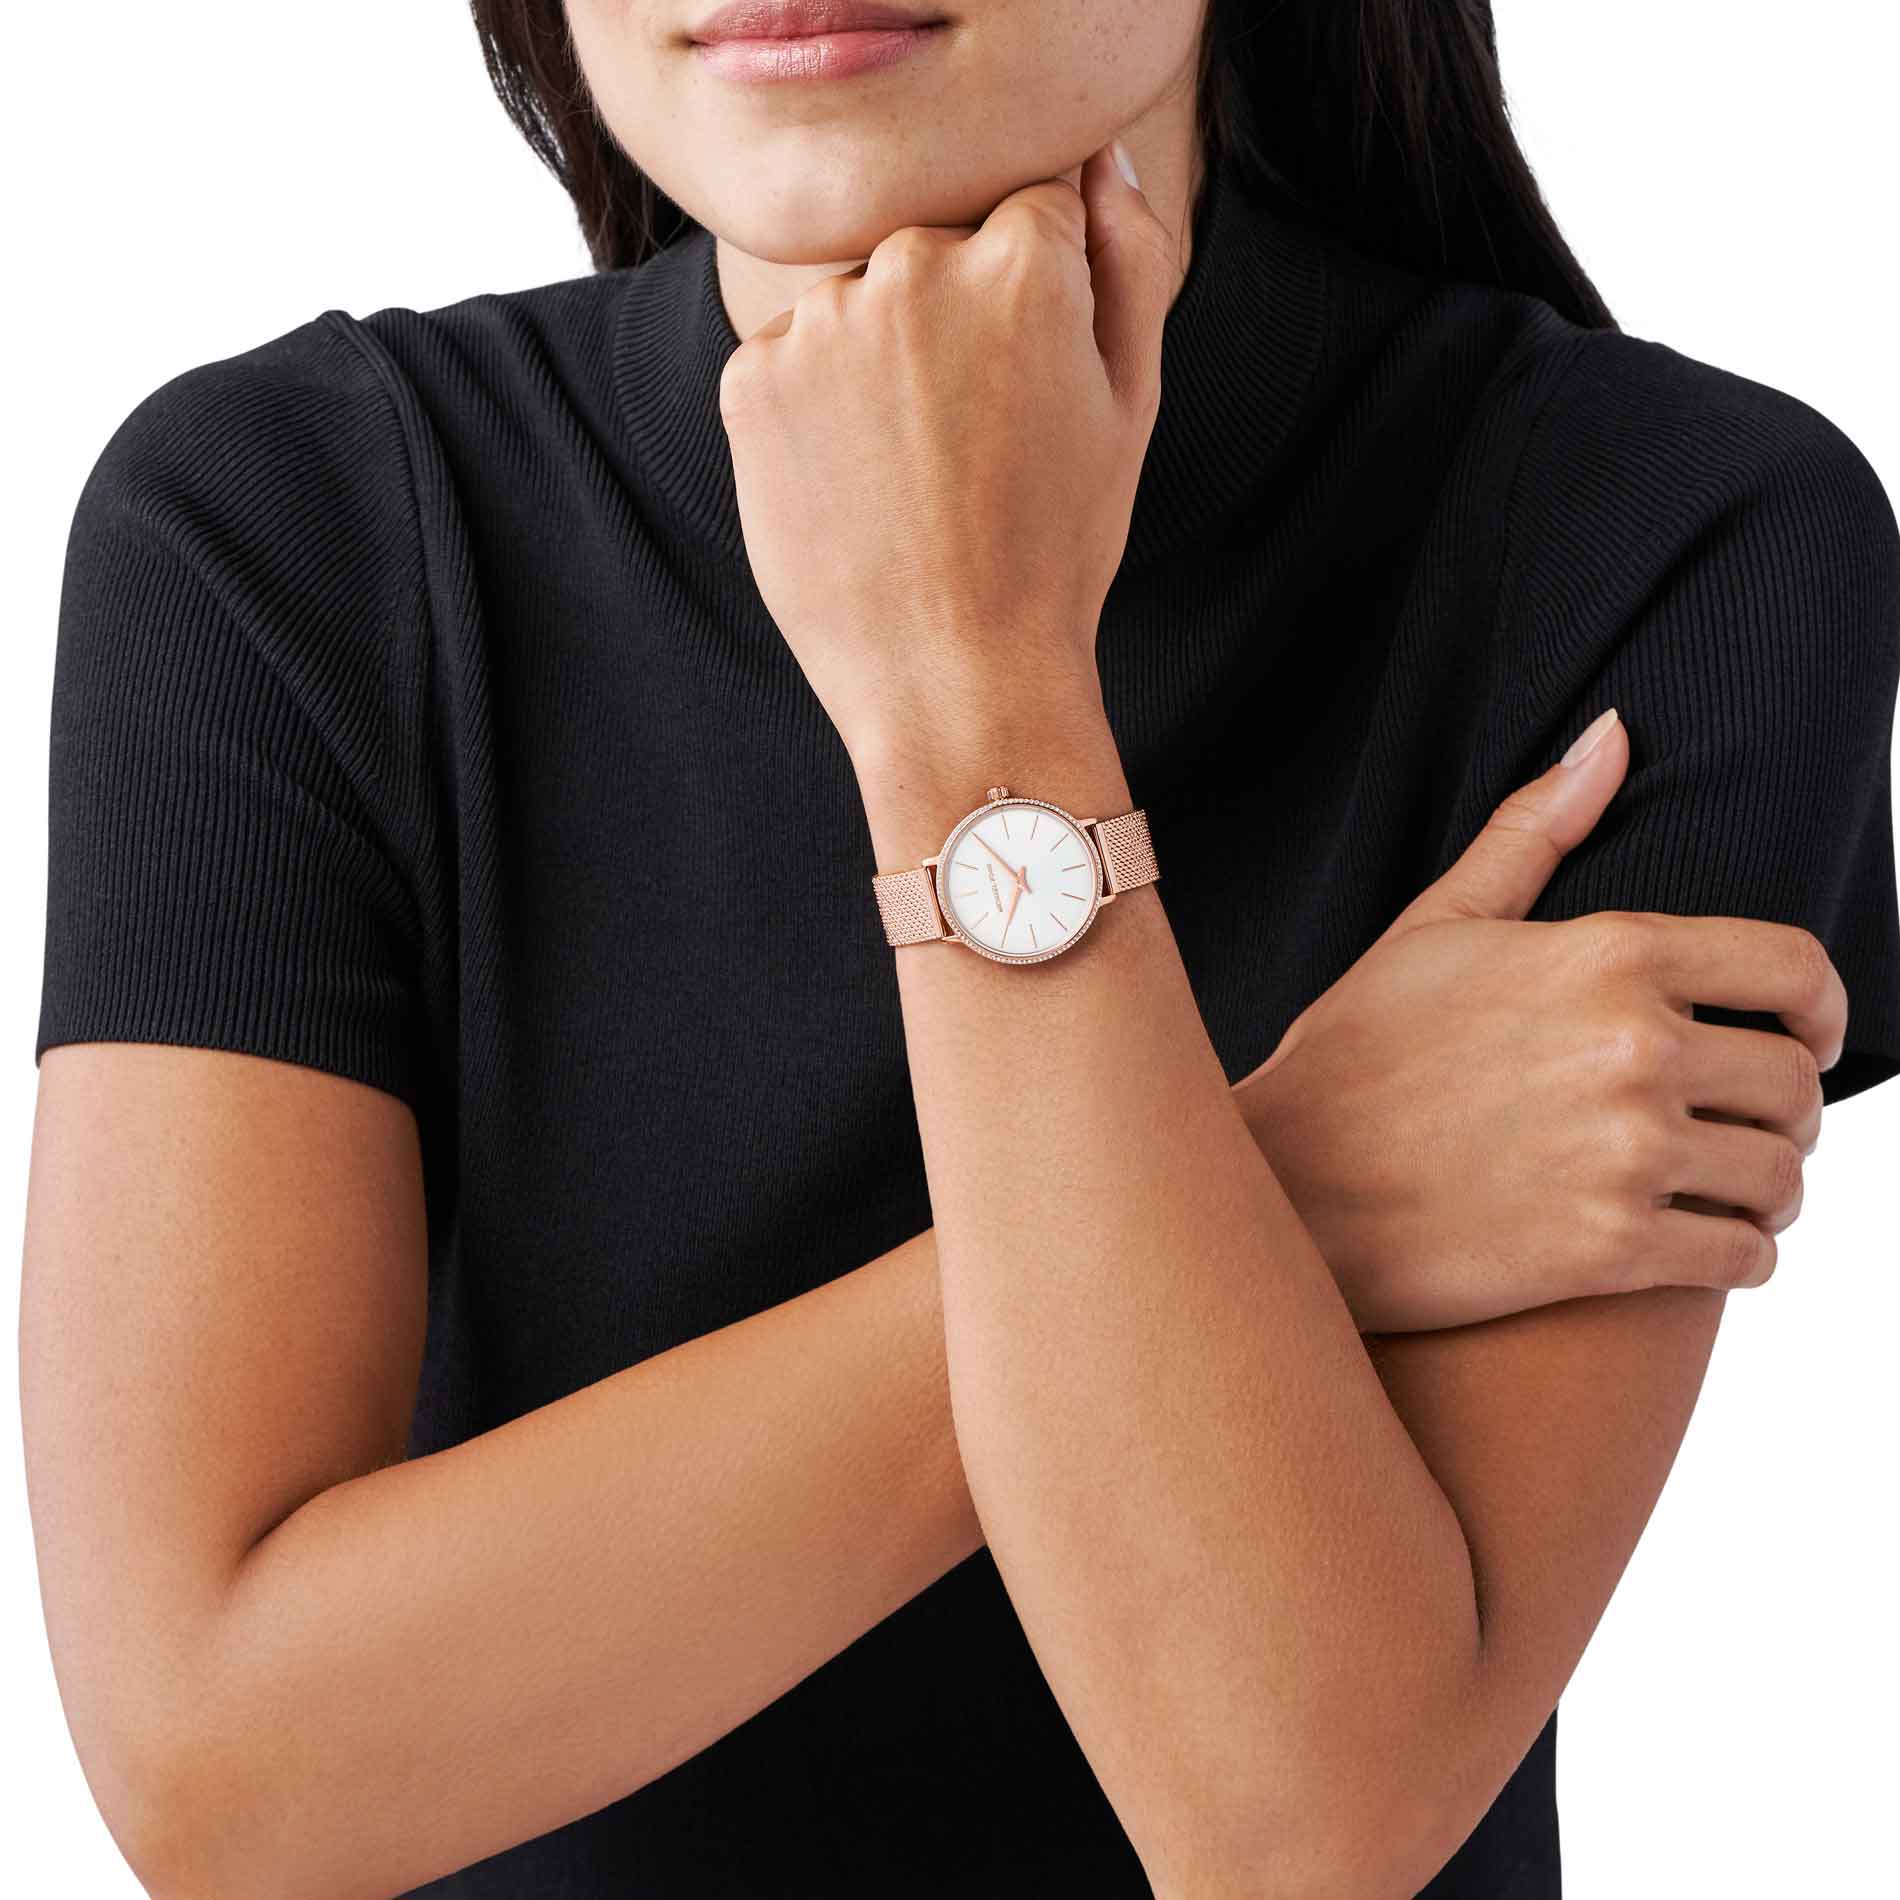 Rosafarvet Michael Kors Pyper MK4588 dameur med hvide i kransen og hvid urskive. Uret har mesh-lænke. Uret ses på håndledet af en kvinde iført en sort T-shirt.